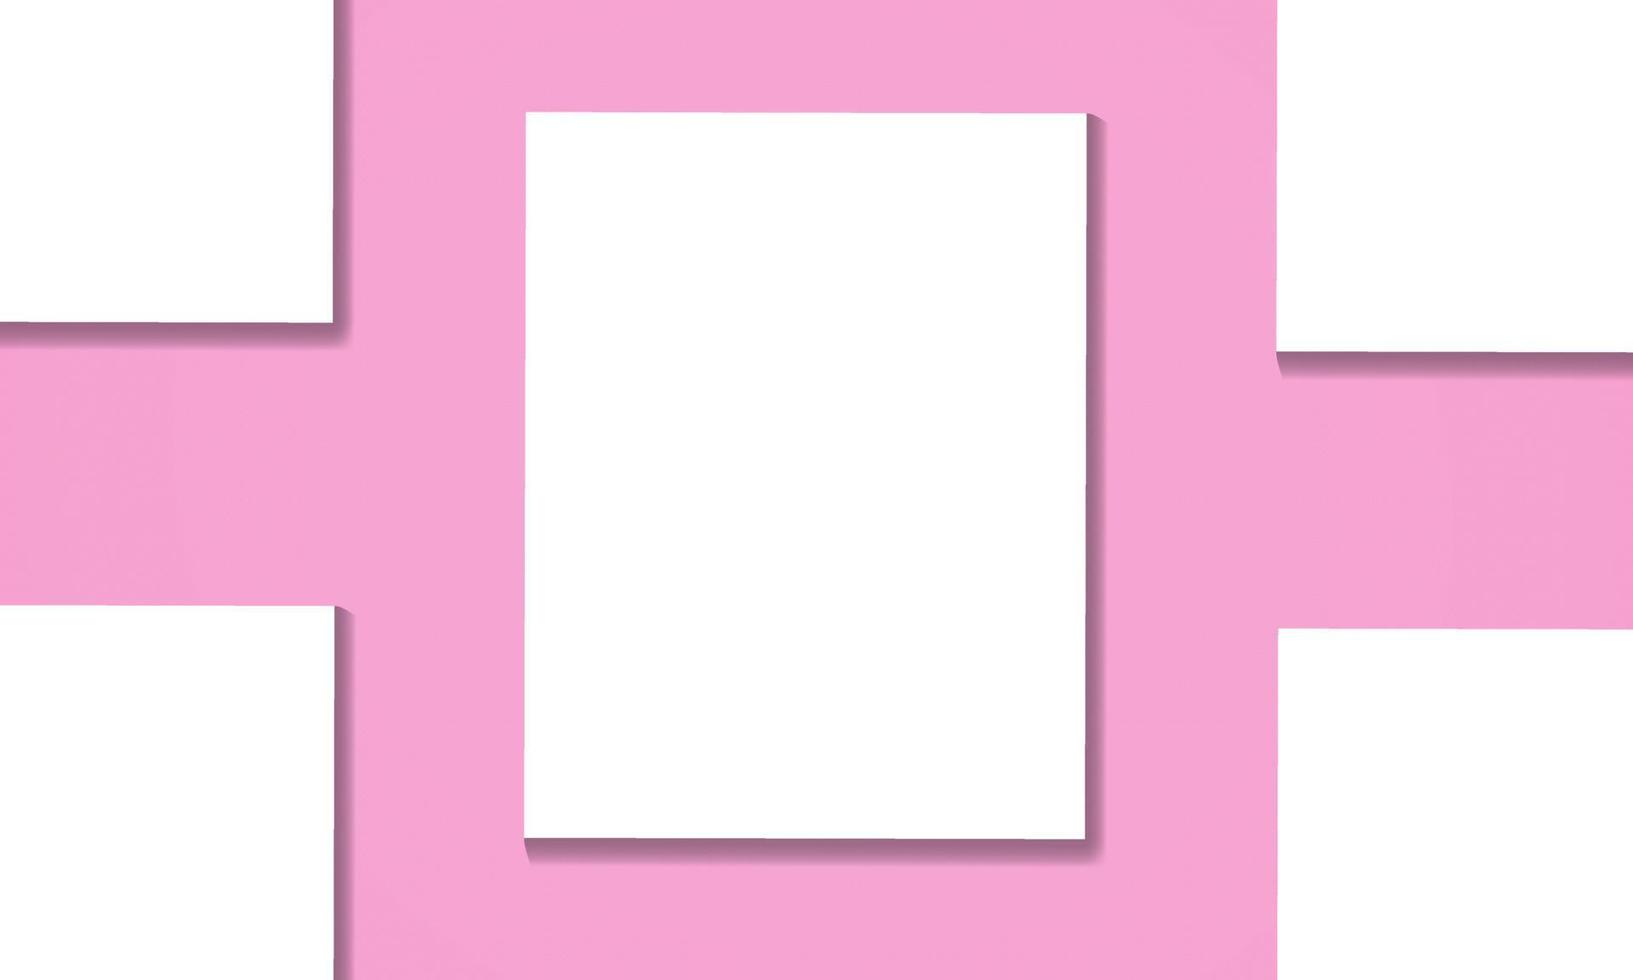 modelo de maquete de papel em branco para panfletos de identidade de marca folhetos de folheto convite banner de documento corporativo ilustração eps modelo de apresentação de negócios de escritório pro arquivo vetorial vetor